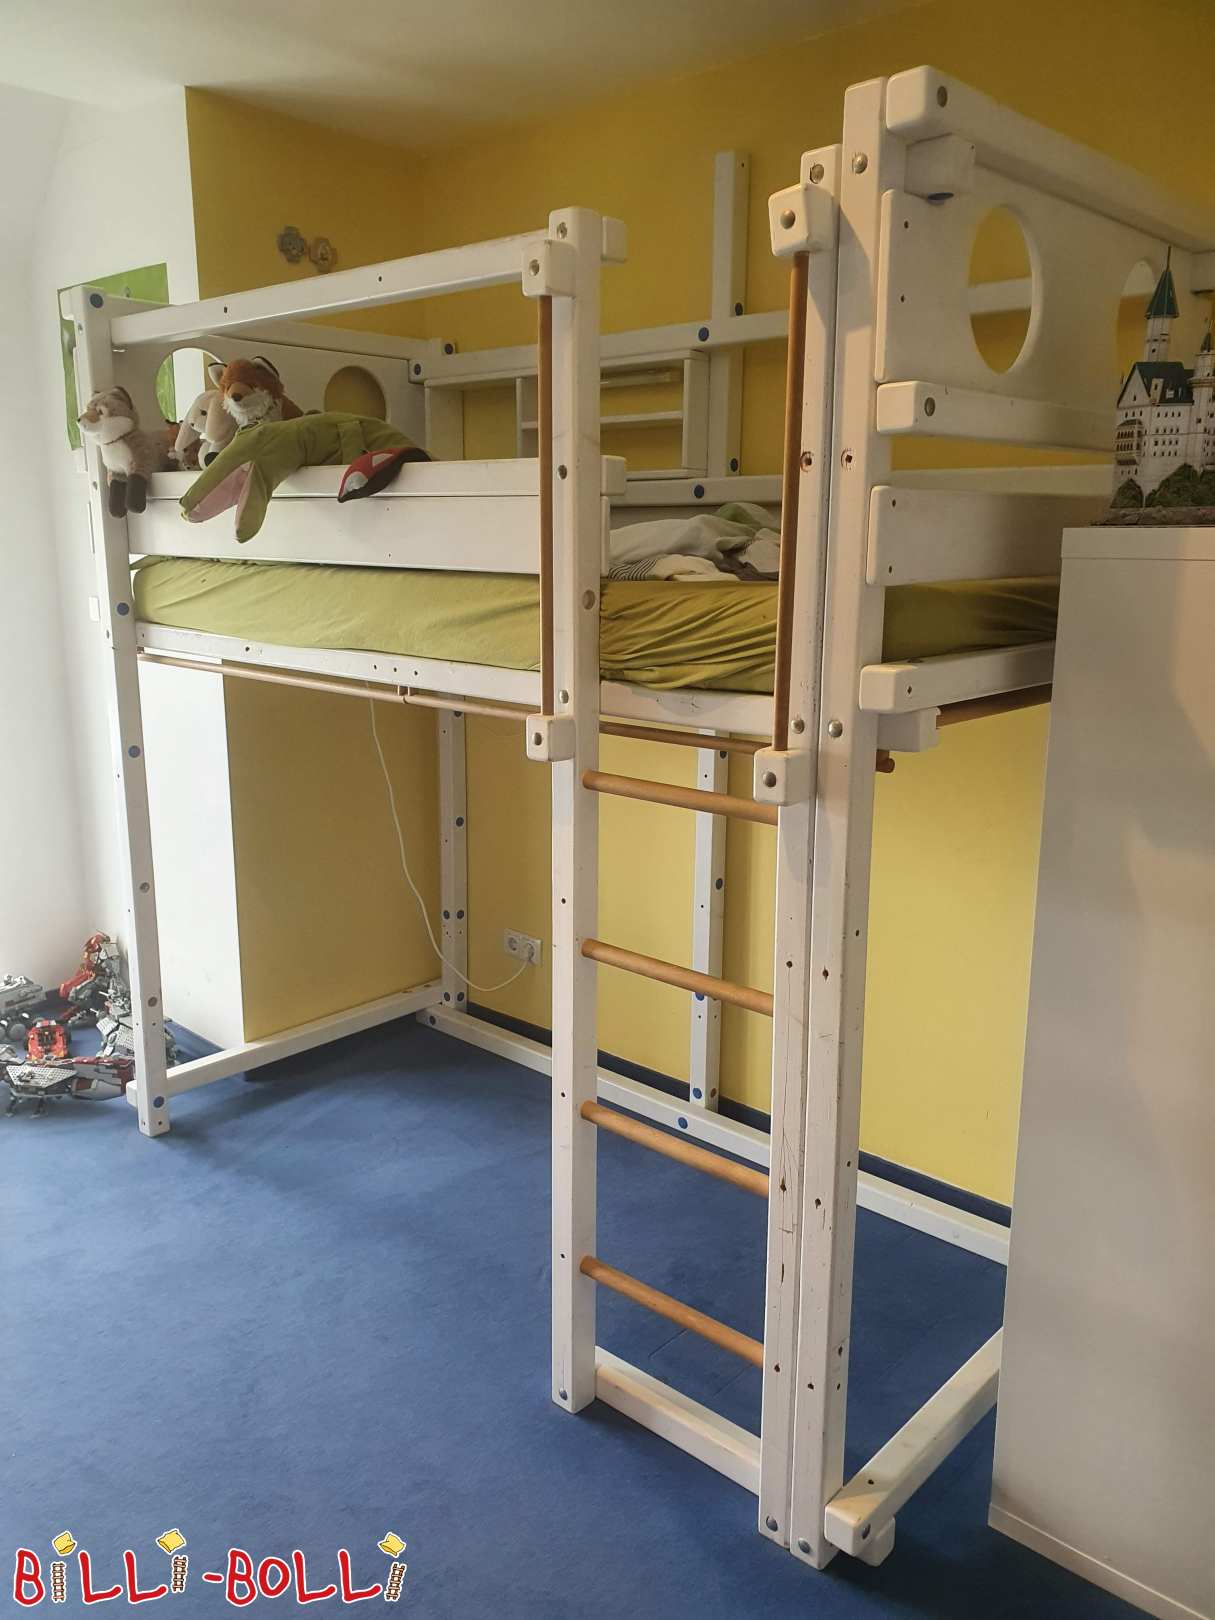 Loftová posteľ, ktorá rastie s dieťaťom (Kategória: Vysoká posteľ rastúca s dieťaťom used)